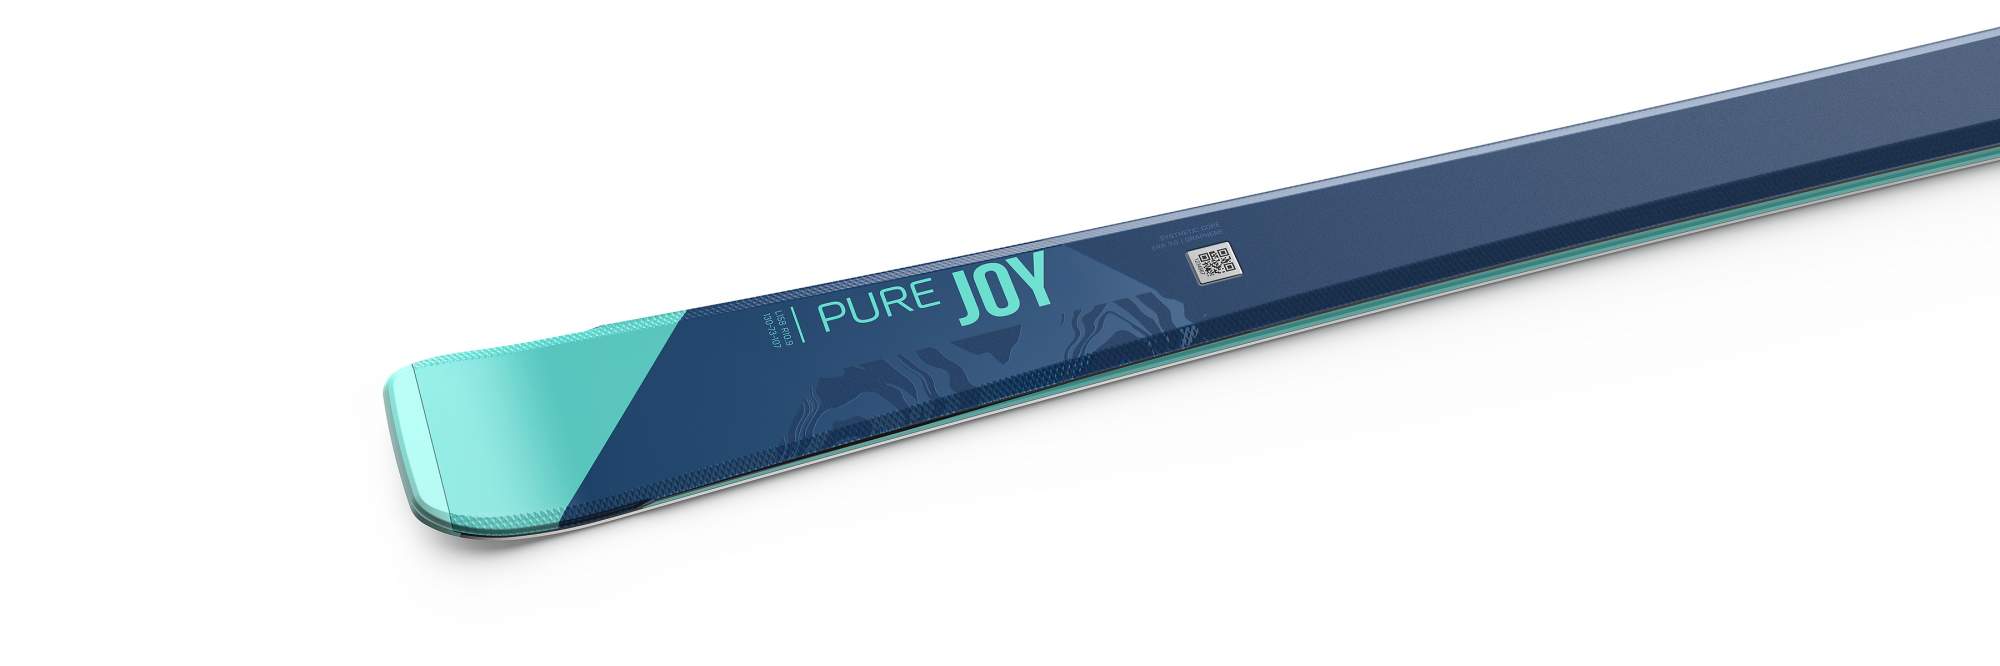 Горные Лыжи С Креплениями Head 2021-22 Pure Joy + Joy 9 Slr Blue/Turquoise (См:143)